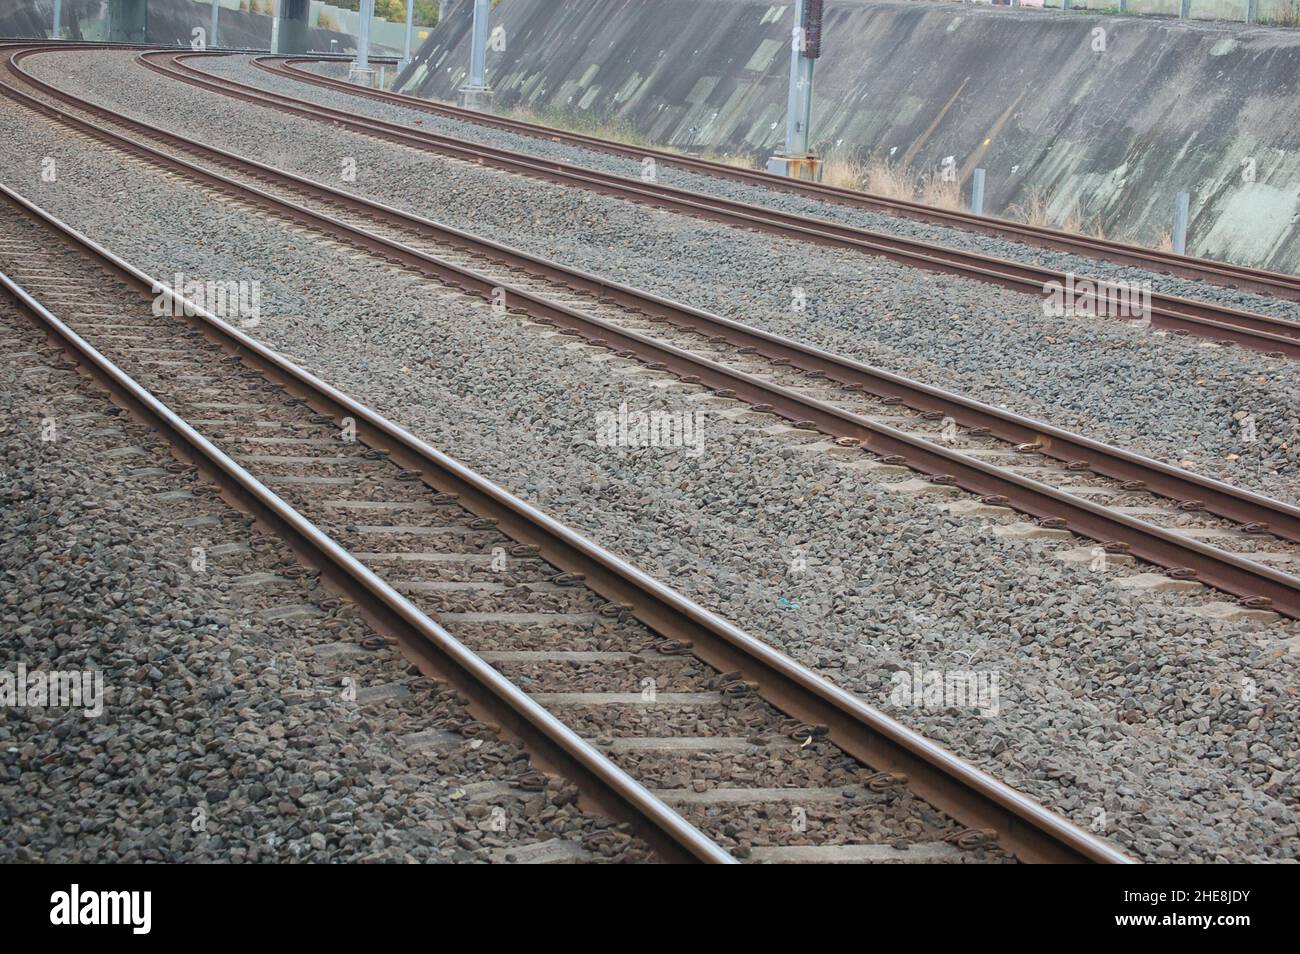 Infrastruttura ferroviaria: Set di 3 binari per il treno curvo Foto Stock